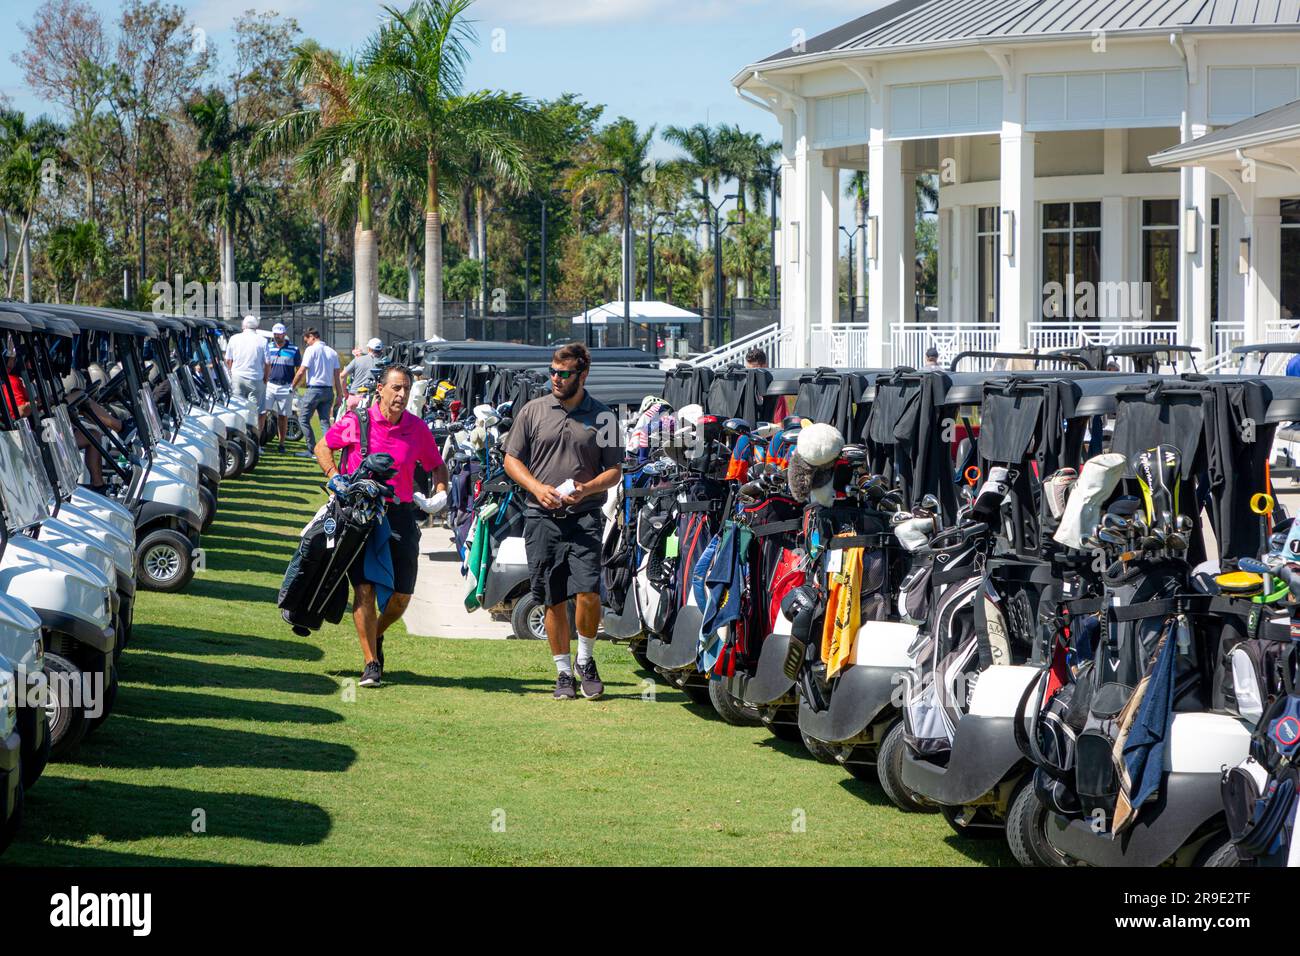 Prepping for golf tournament, Quail Creek Country Club, Naples, Florida, USA Stock Photo